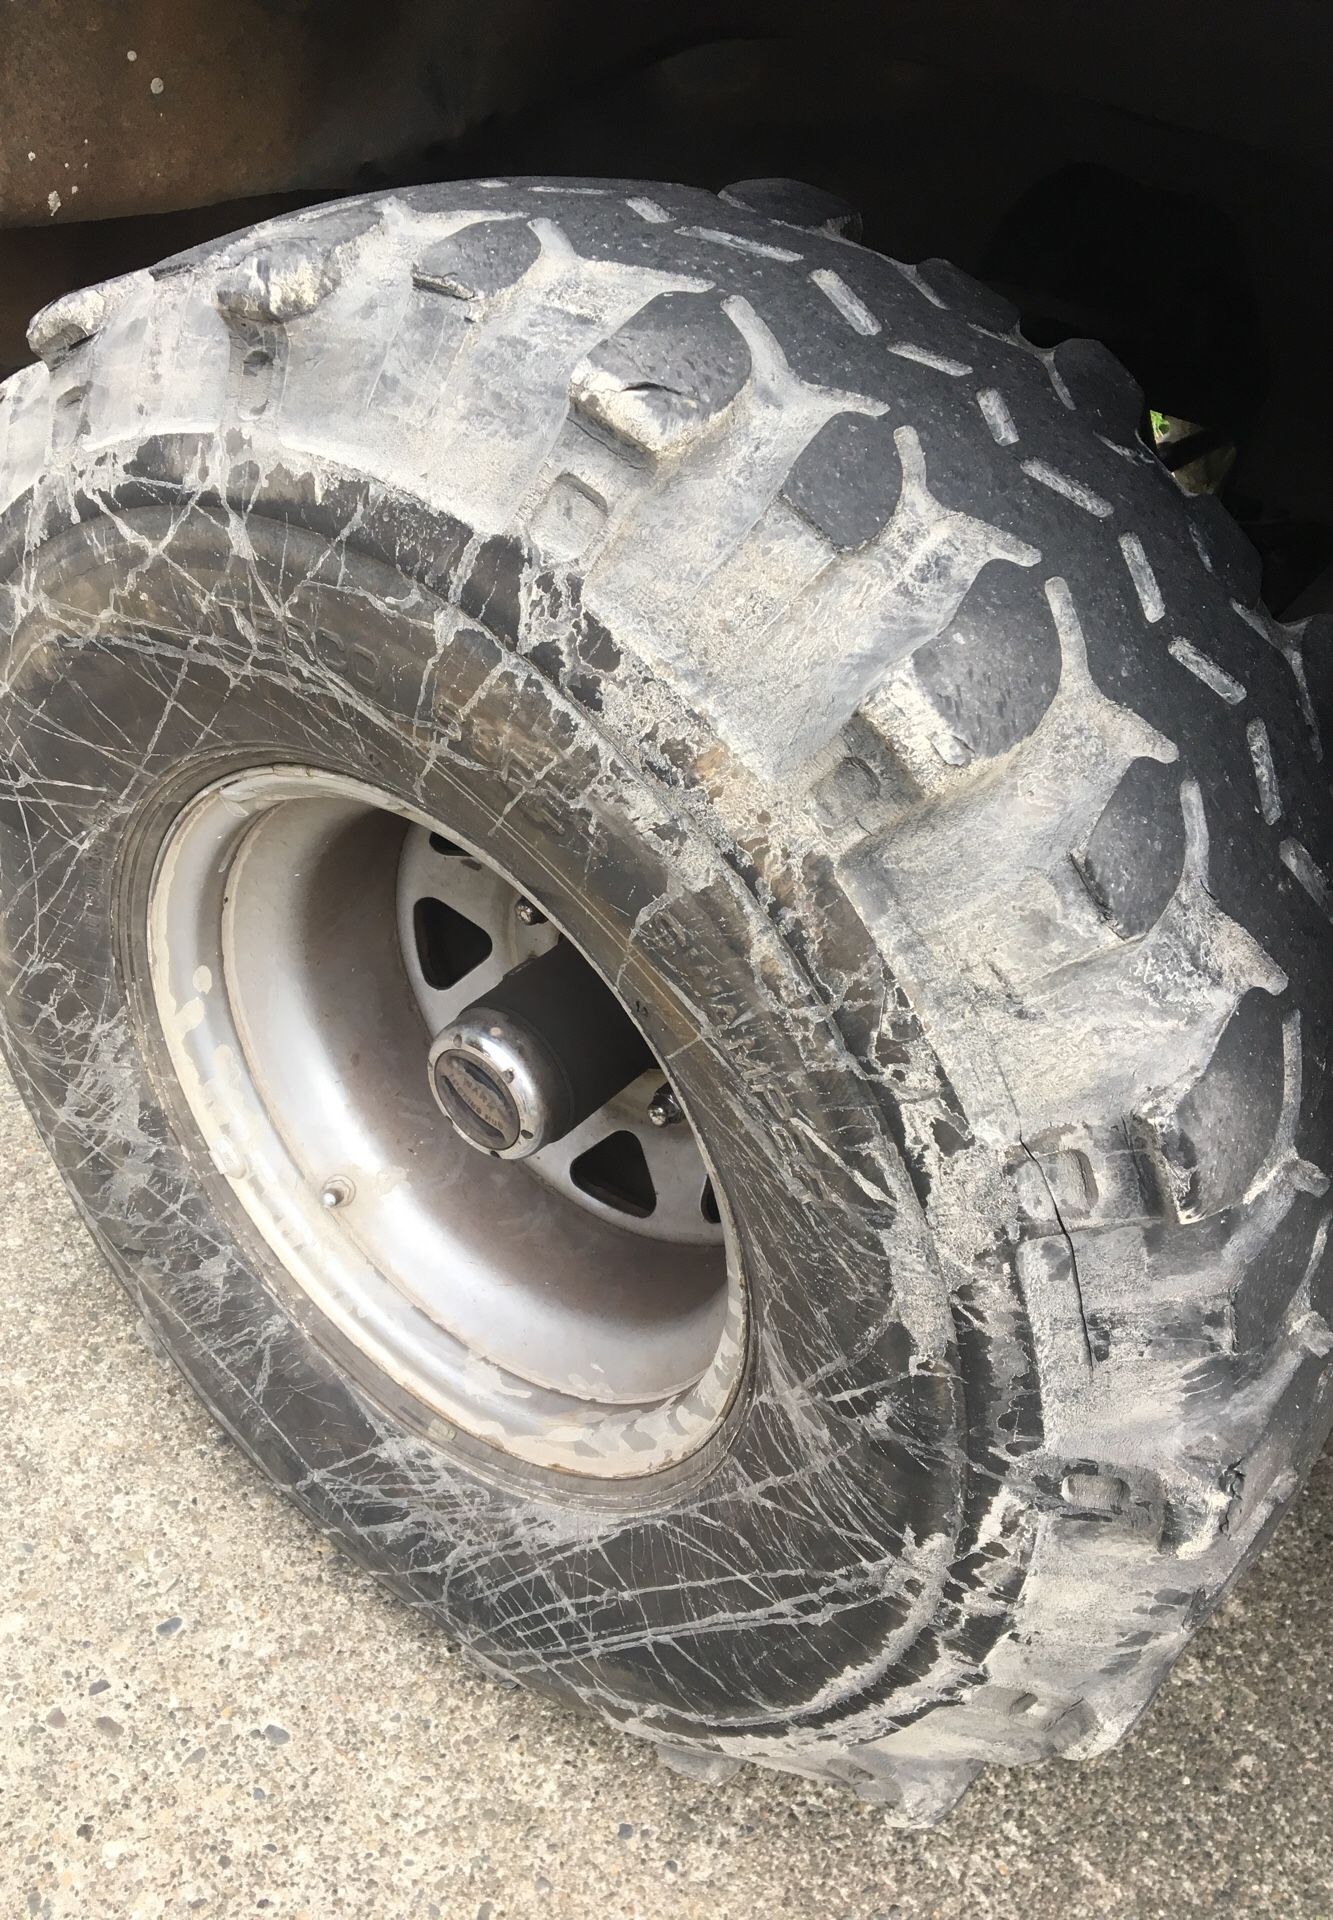 Mud tires